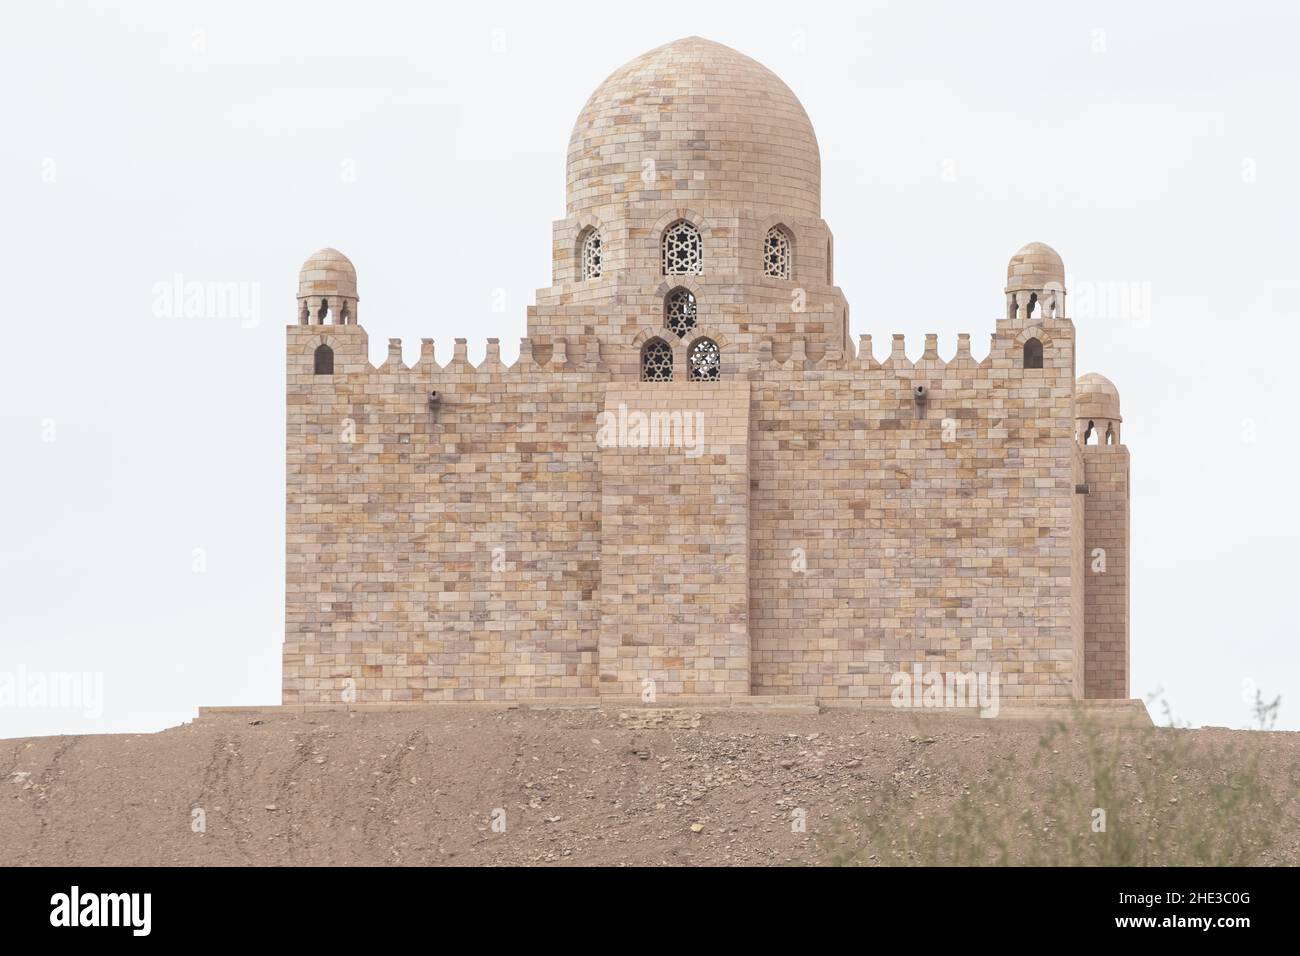 Das Mausoleum von Aga Khan liegt auf einem Hügel mit Blick auf den Nil am Rande der Sahara-Wüste - es ist aus rosa Stein gebaut. Stockfoto